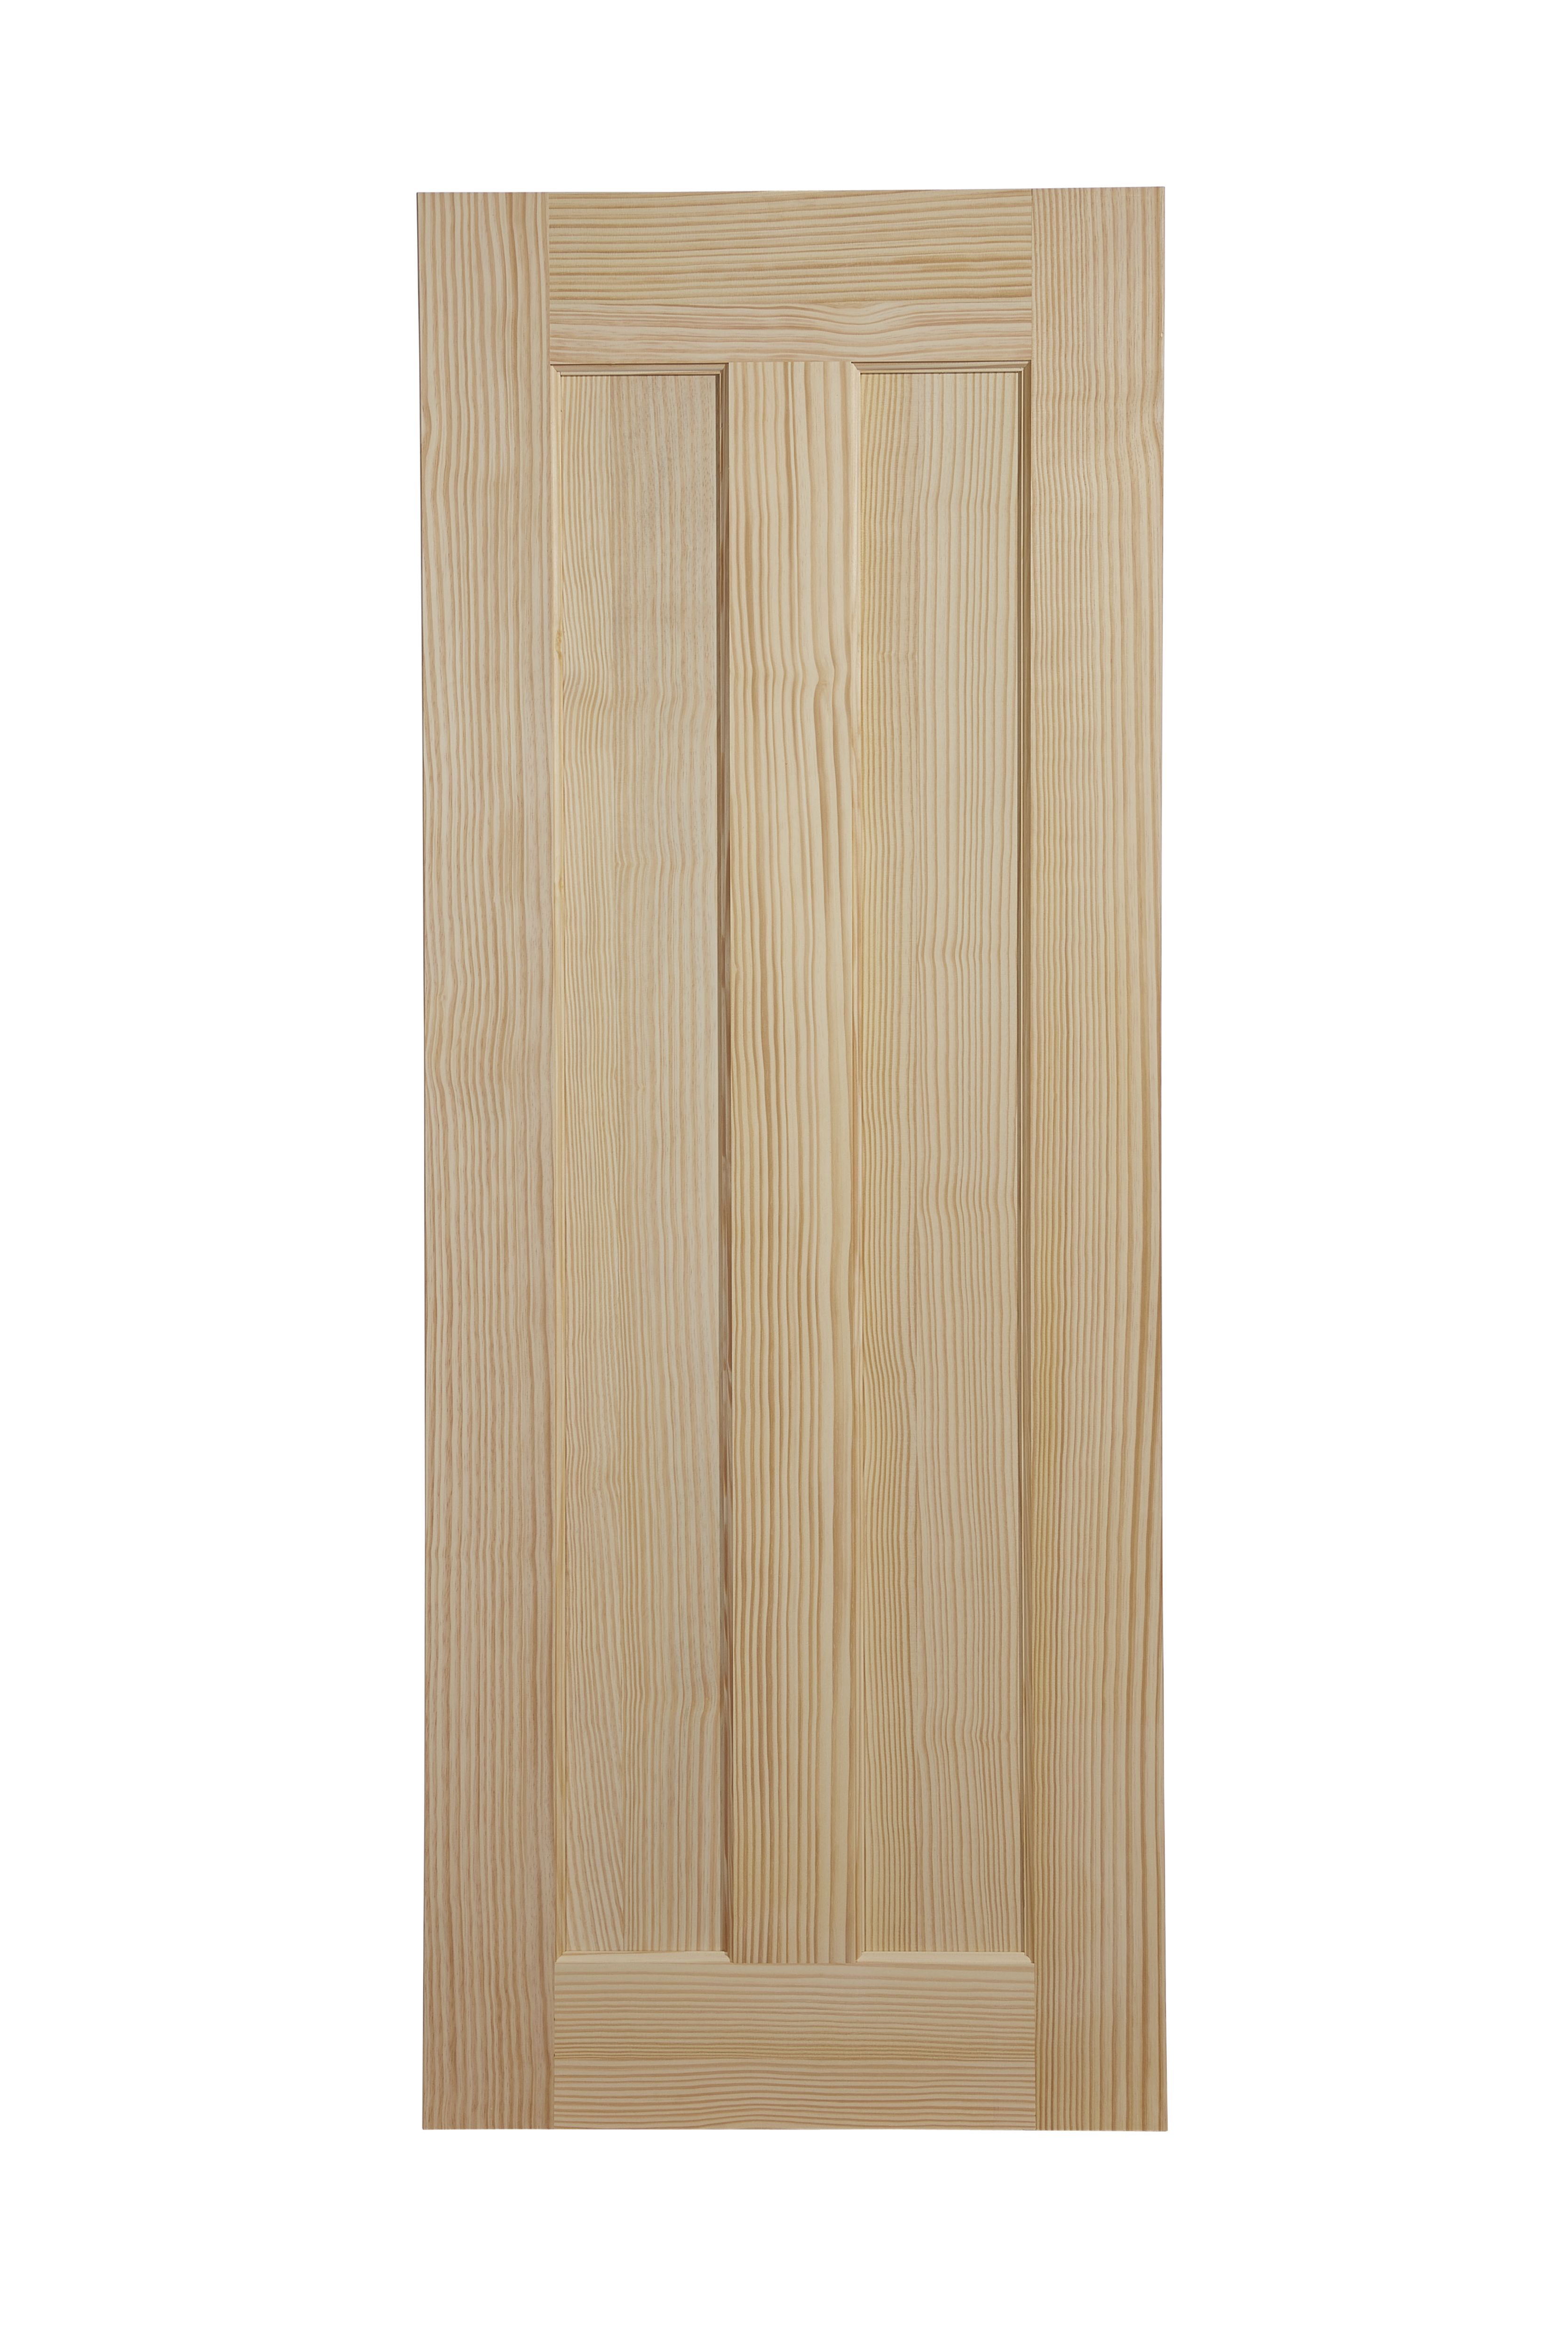 Vertical 2 panel Unglazed Contemporary Pine veneer Internal Clear pine Door, (H)1981mm (W)610mm (T)35mm